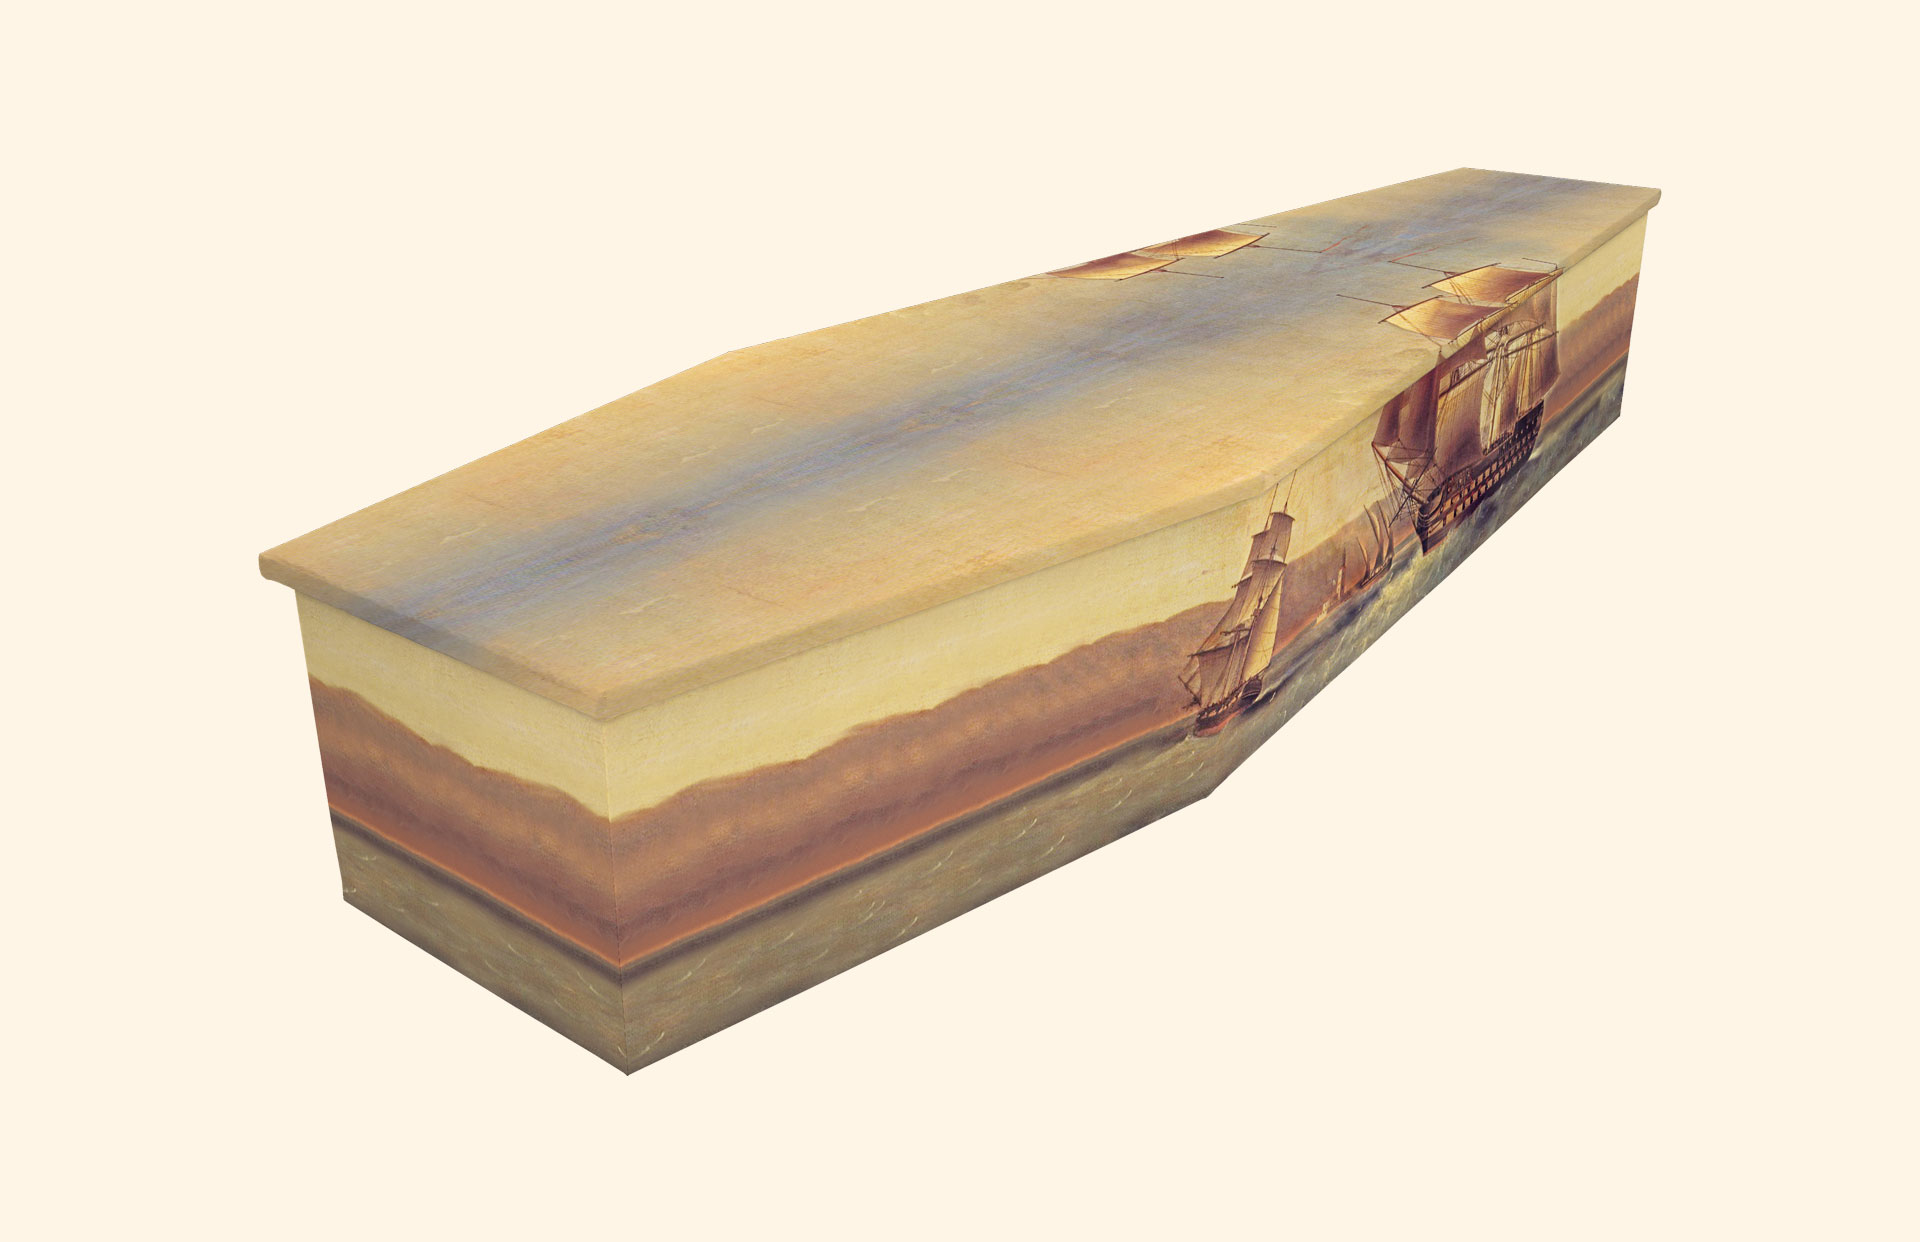 Sailing Ship design on a cardboard coffin